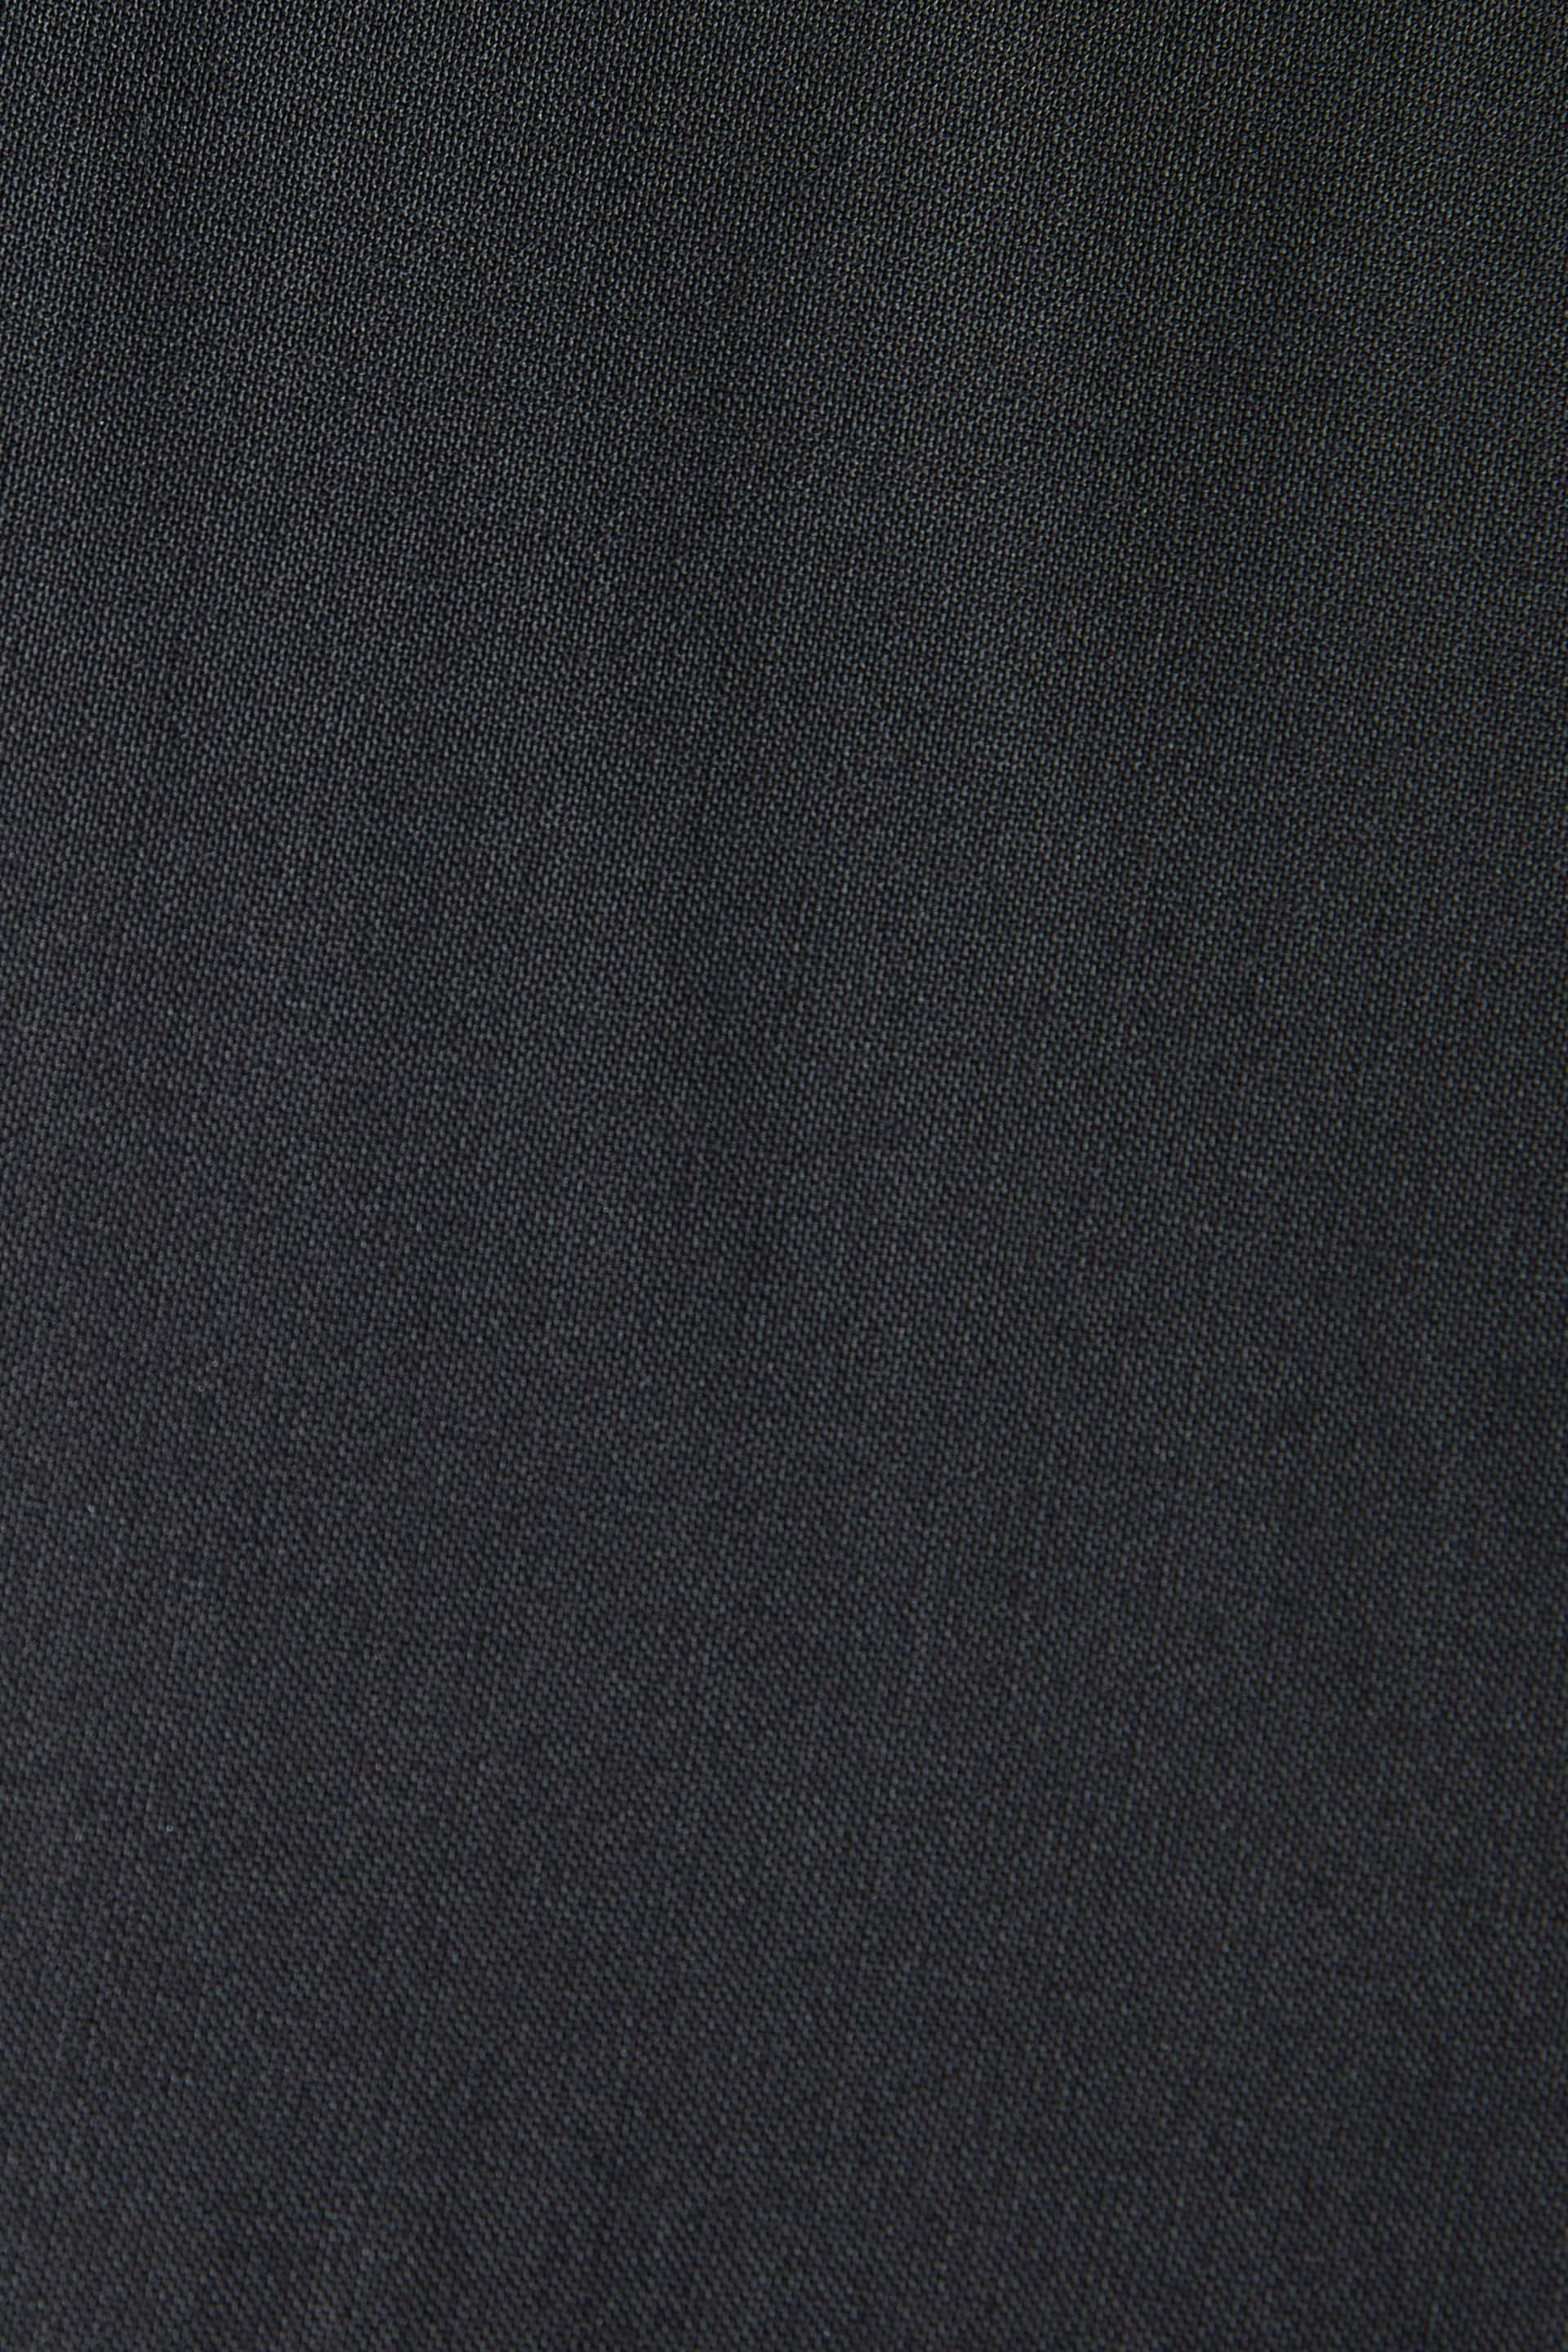 Black Regular Fit Signature Tollegno Italian Fabric Suit Trousers - Image 8 of 8